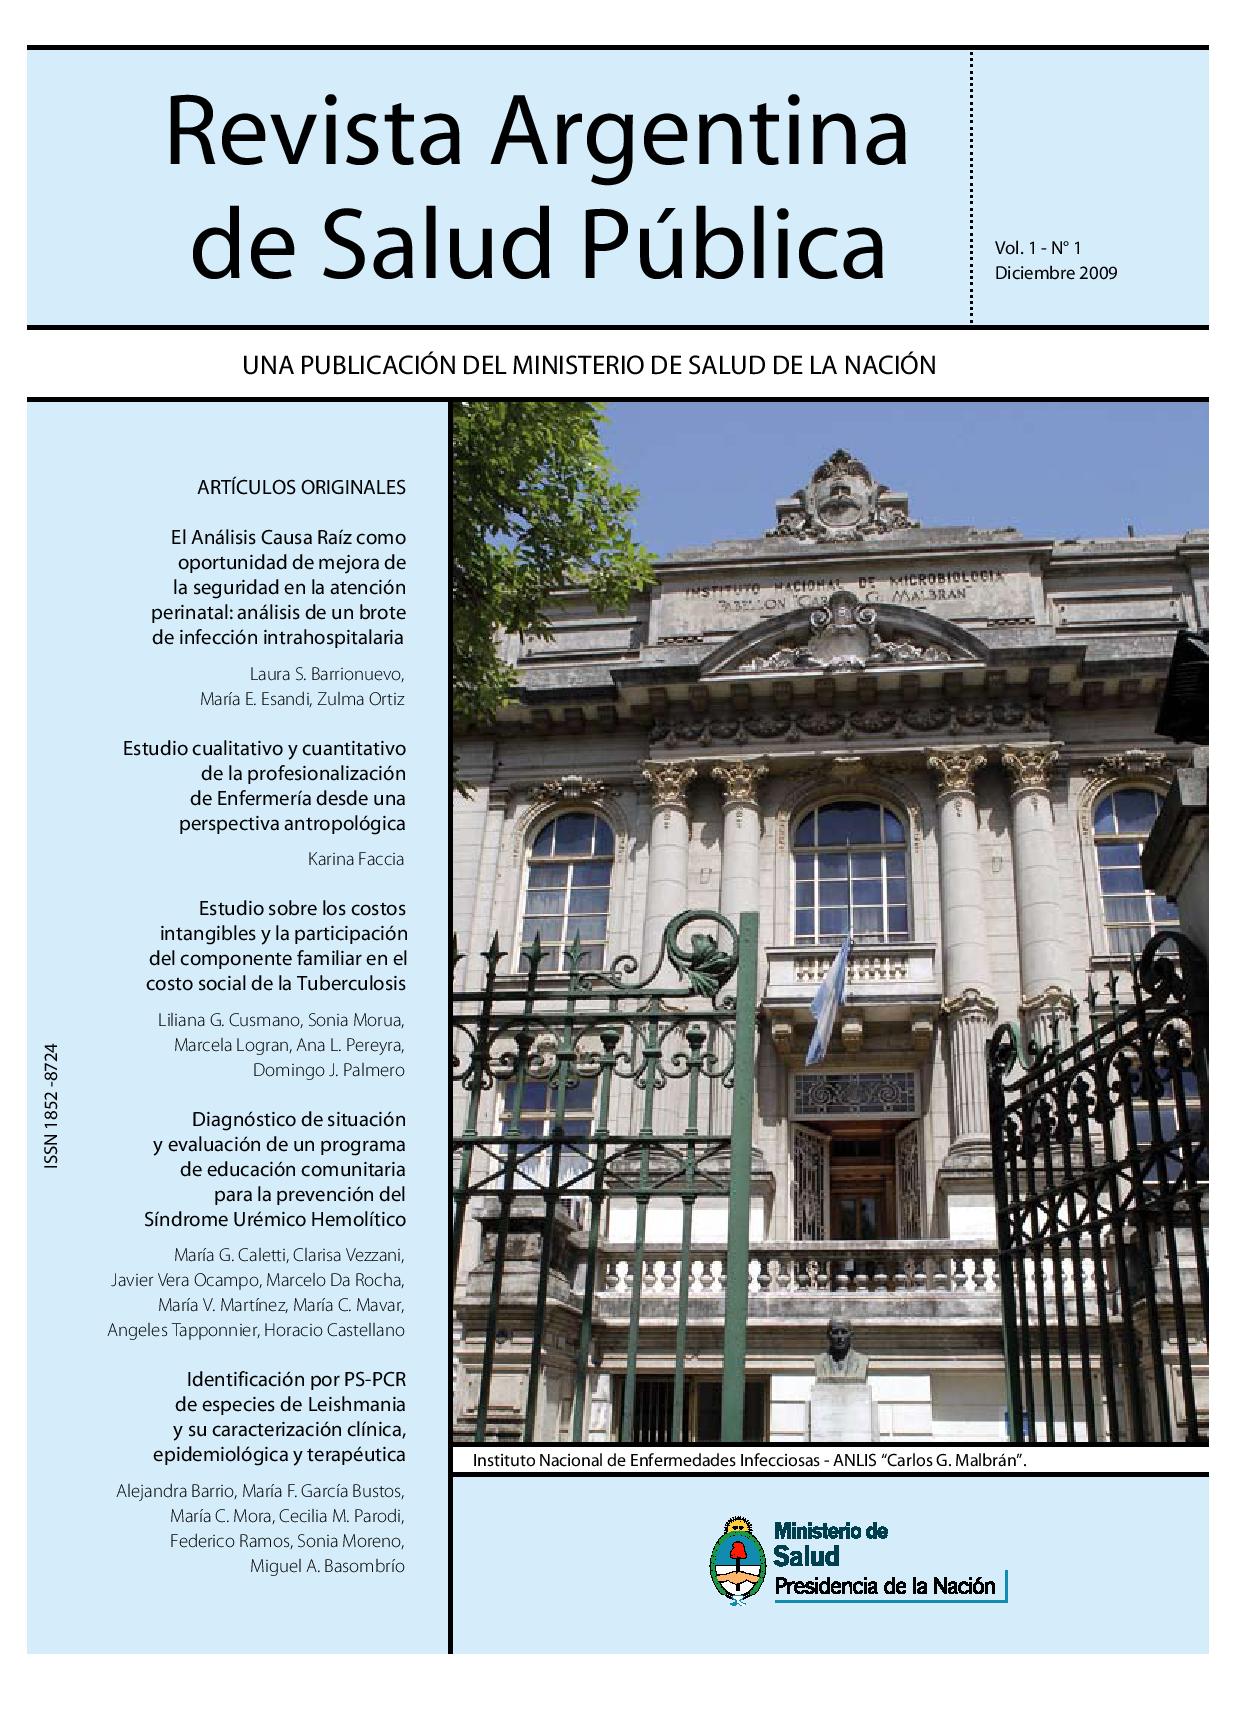 					Ver Vol. 1 Núm. 1 (2009): Revista Argentina de Salud Pública
				